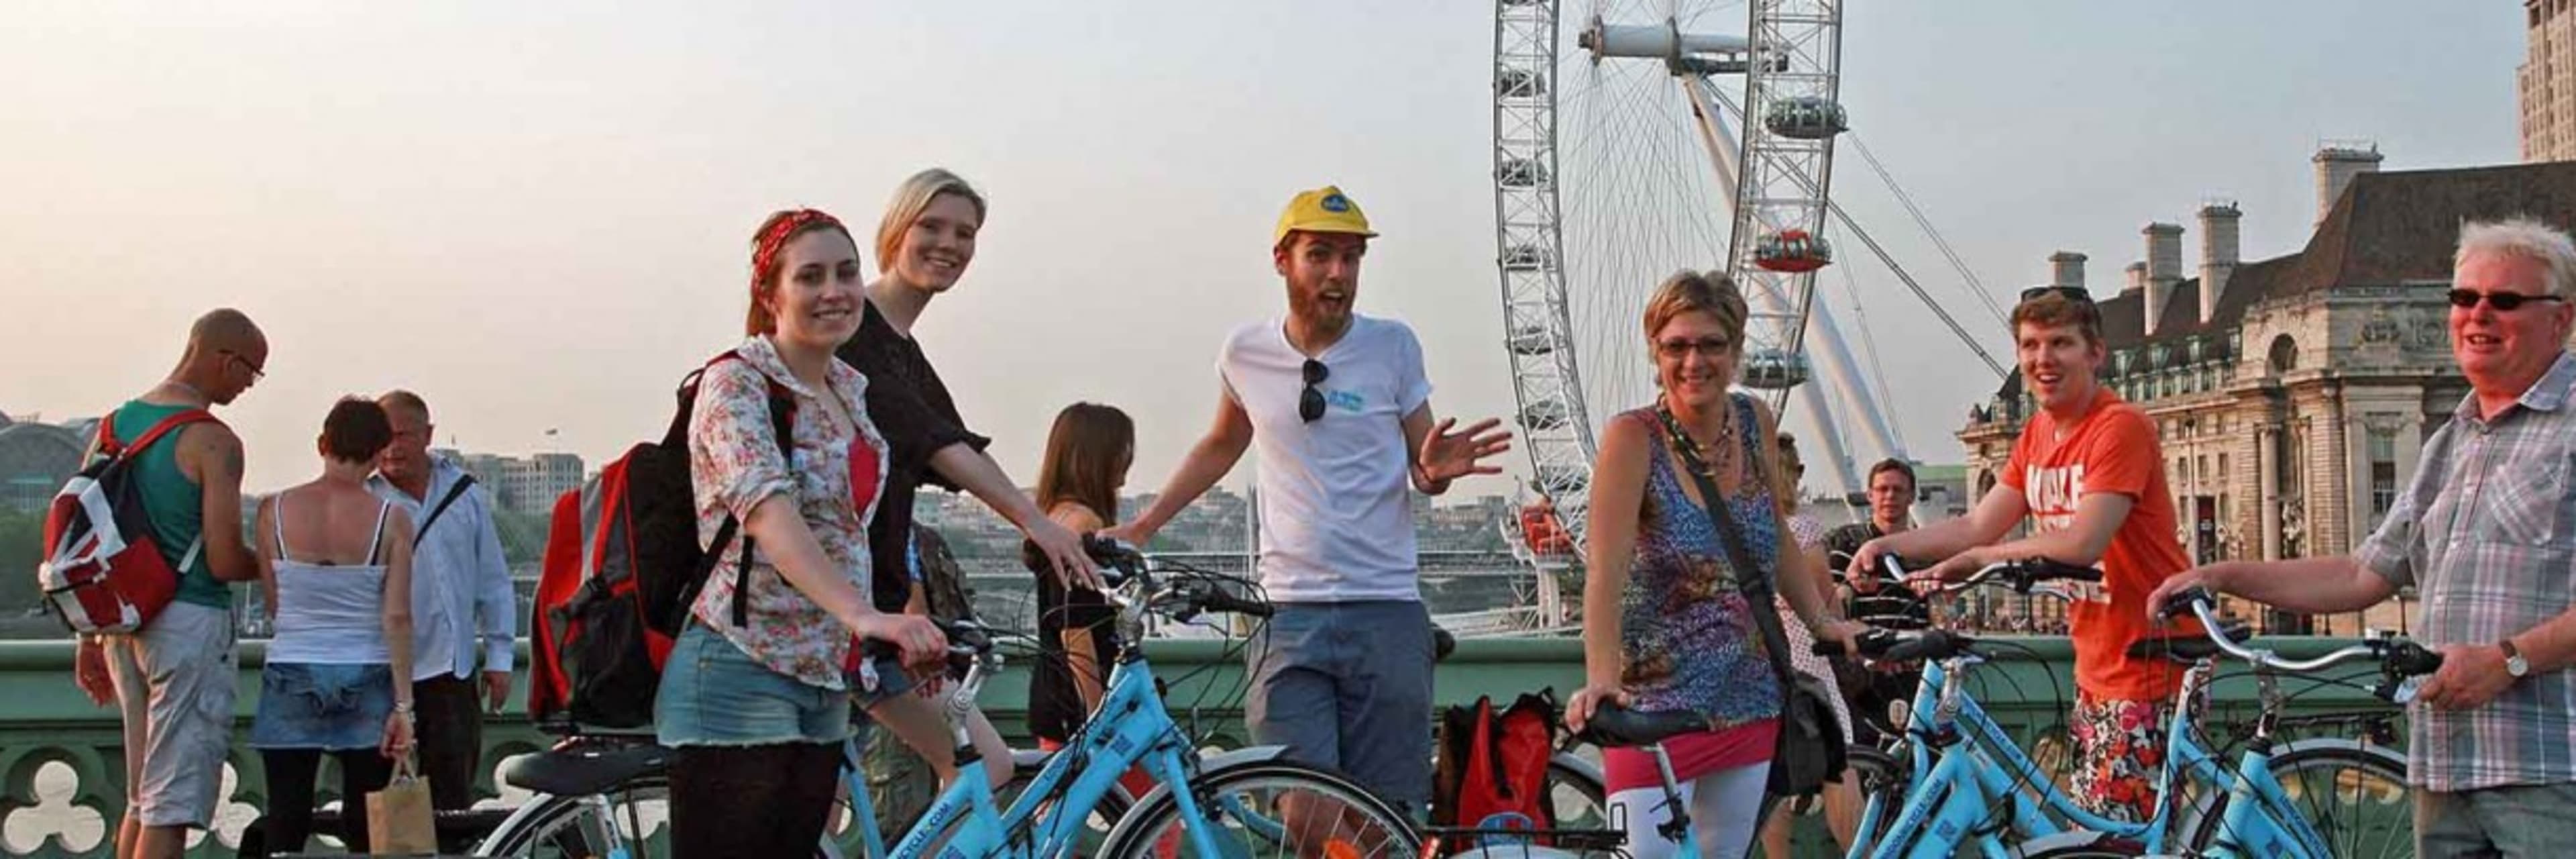 London Bike Tour